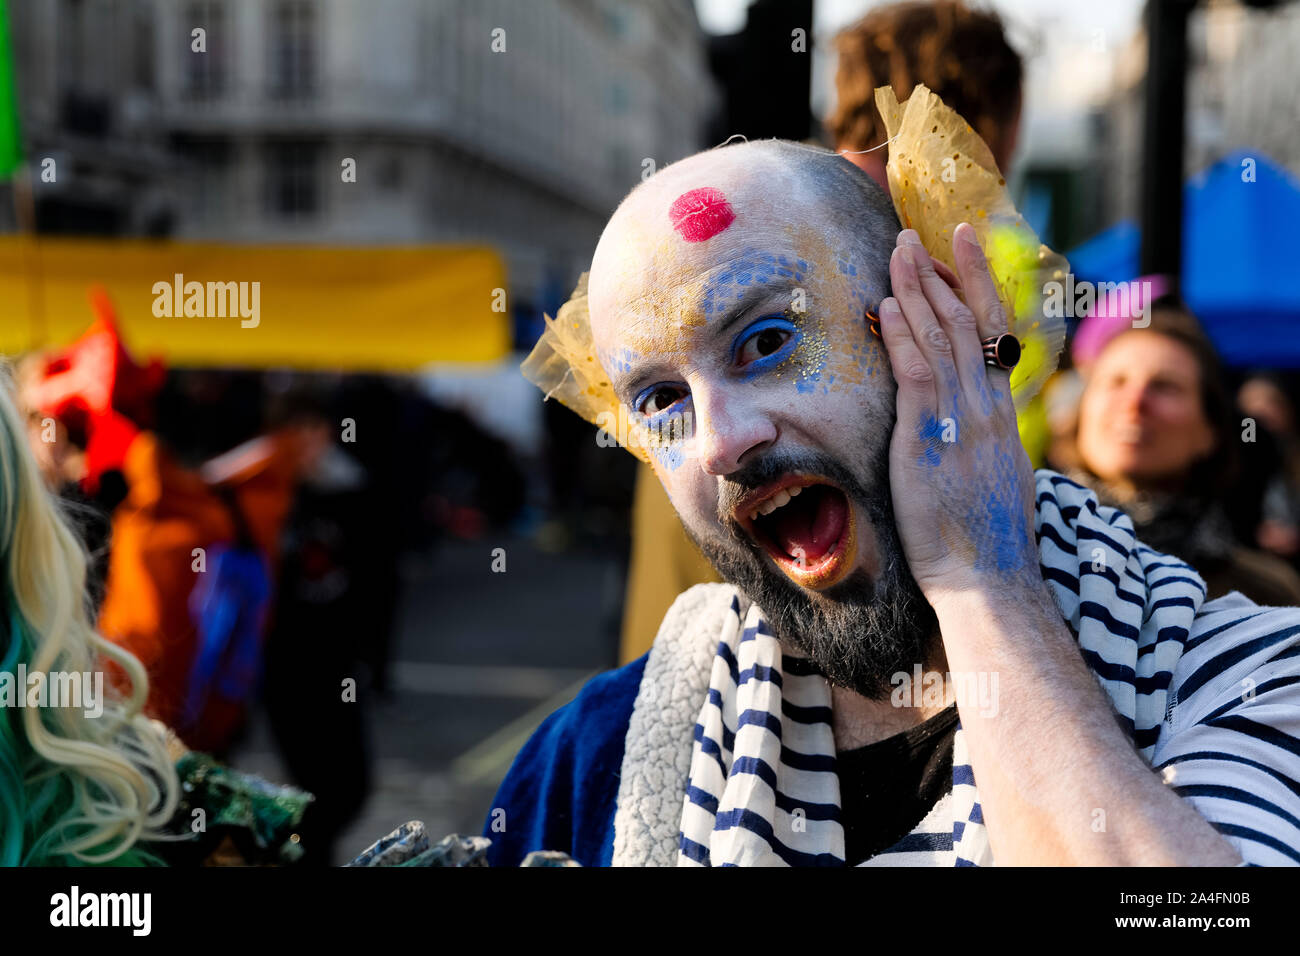 Londres, Royaume-Uni. Un manifestant avec un maquillage audacieux appliqué frappe une pose à Oxford Circus lors de la protestation contre la rébellion de l'extinction. Banque D'Images